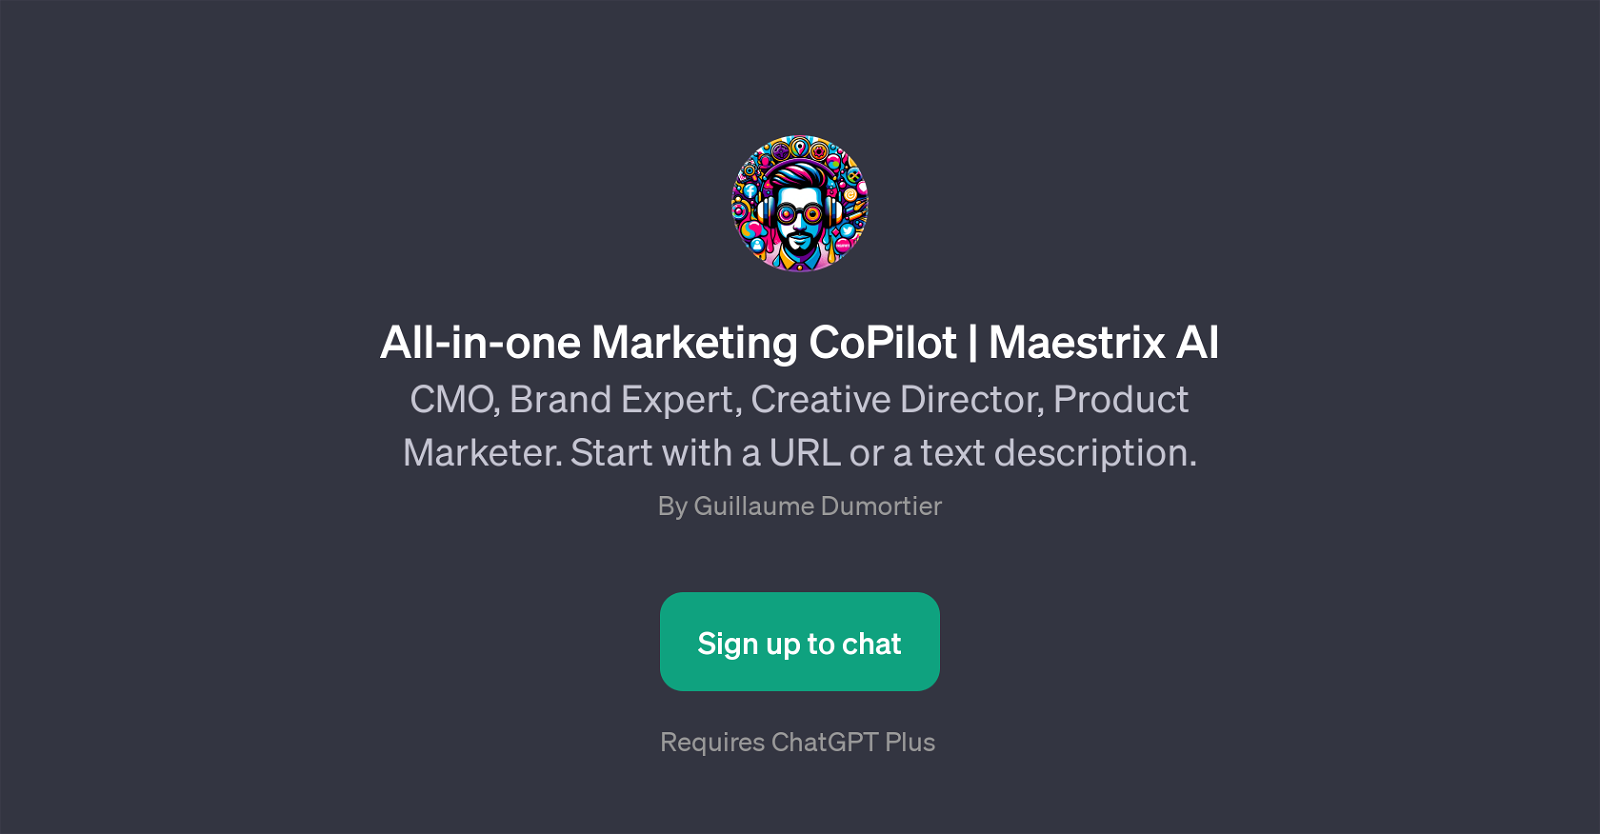 All-in-one Marketing CoPilot | Maestrix AI website